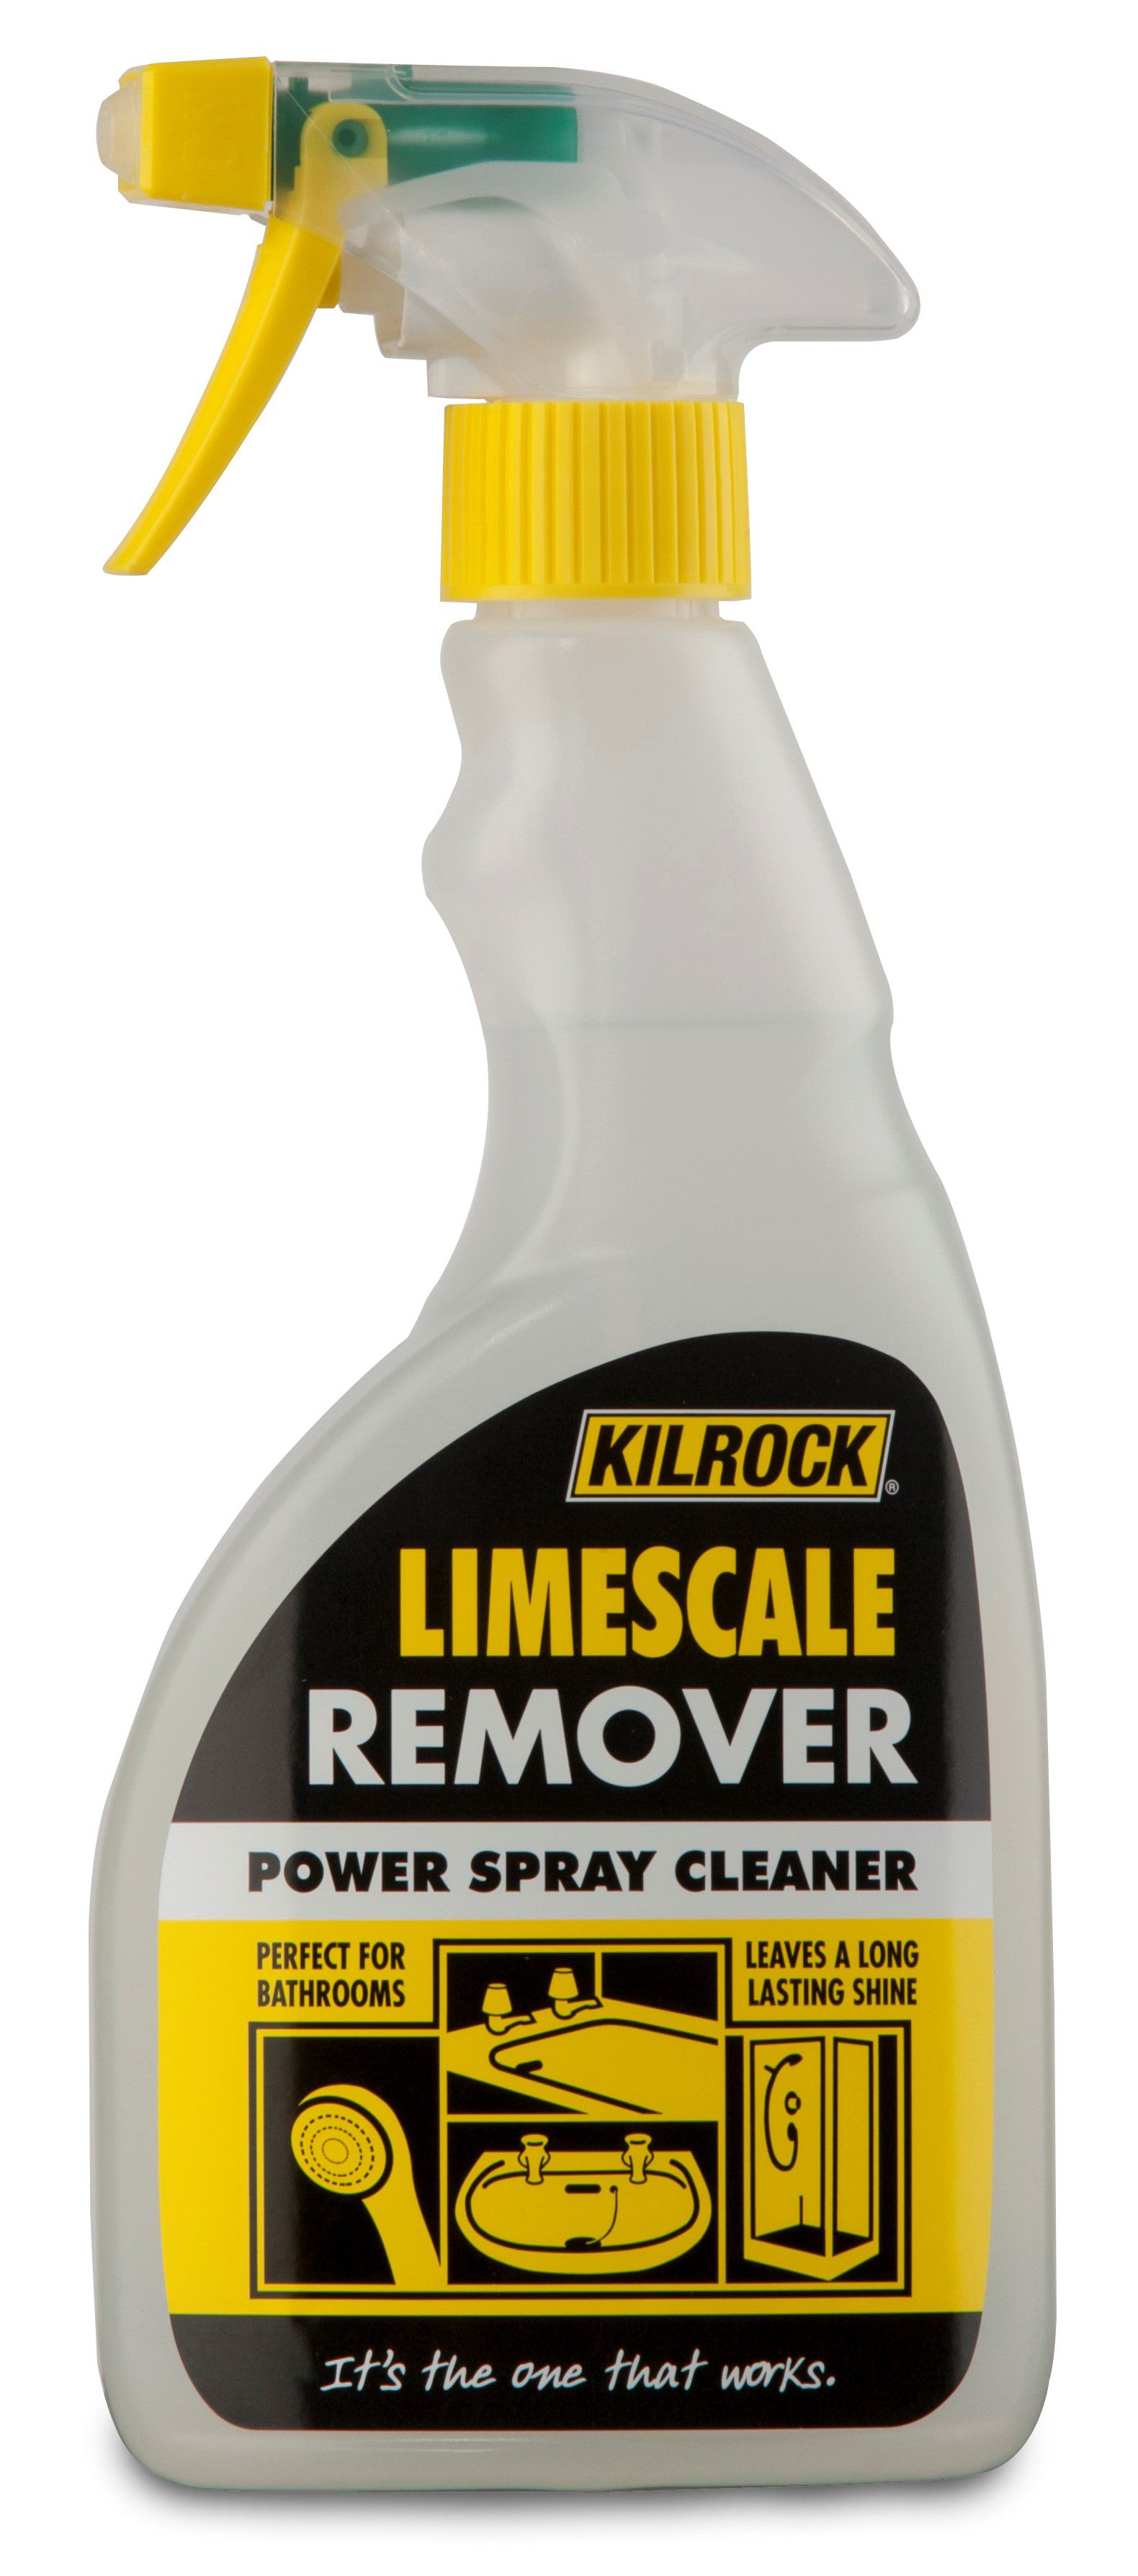 Kilrock Limescale remover